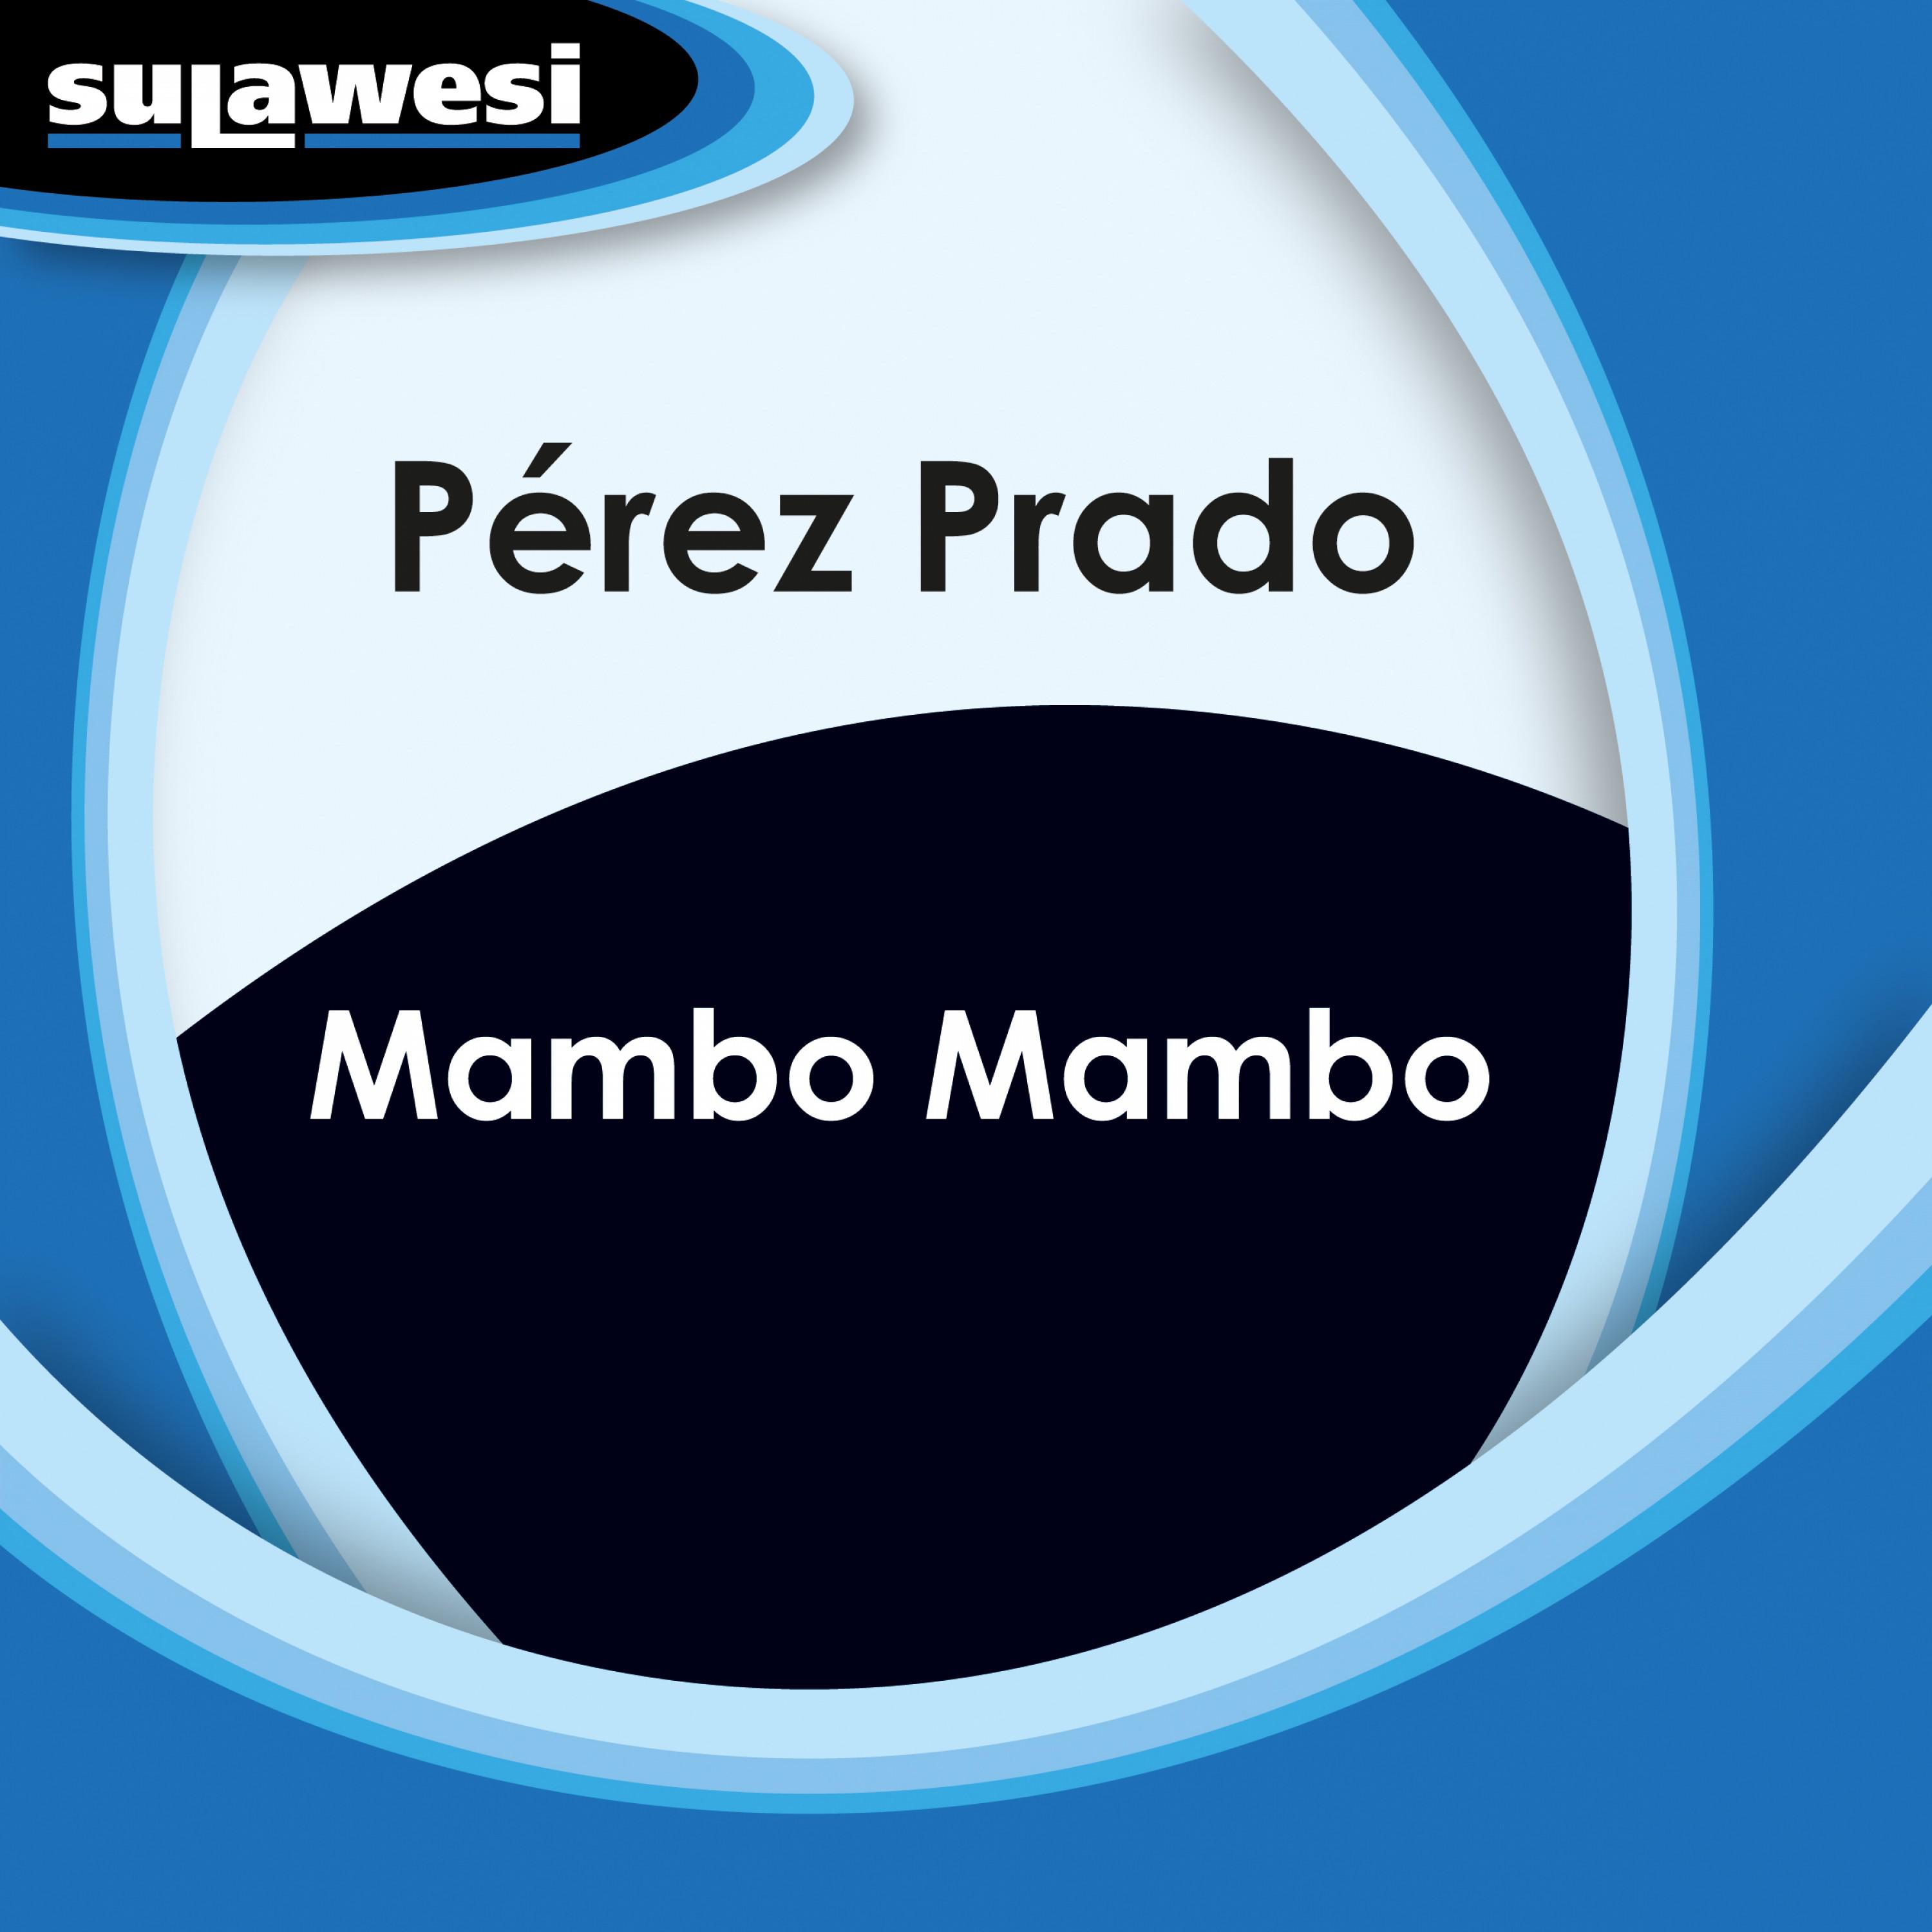 Mambo Mambo